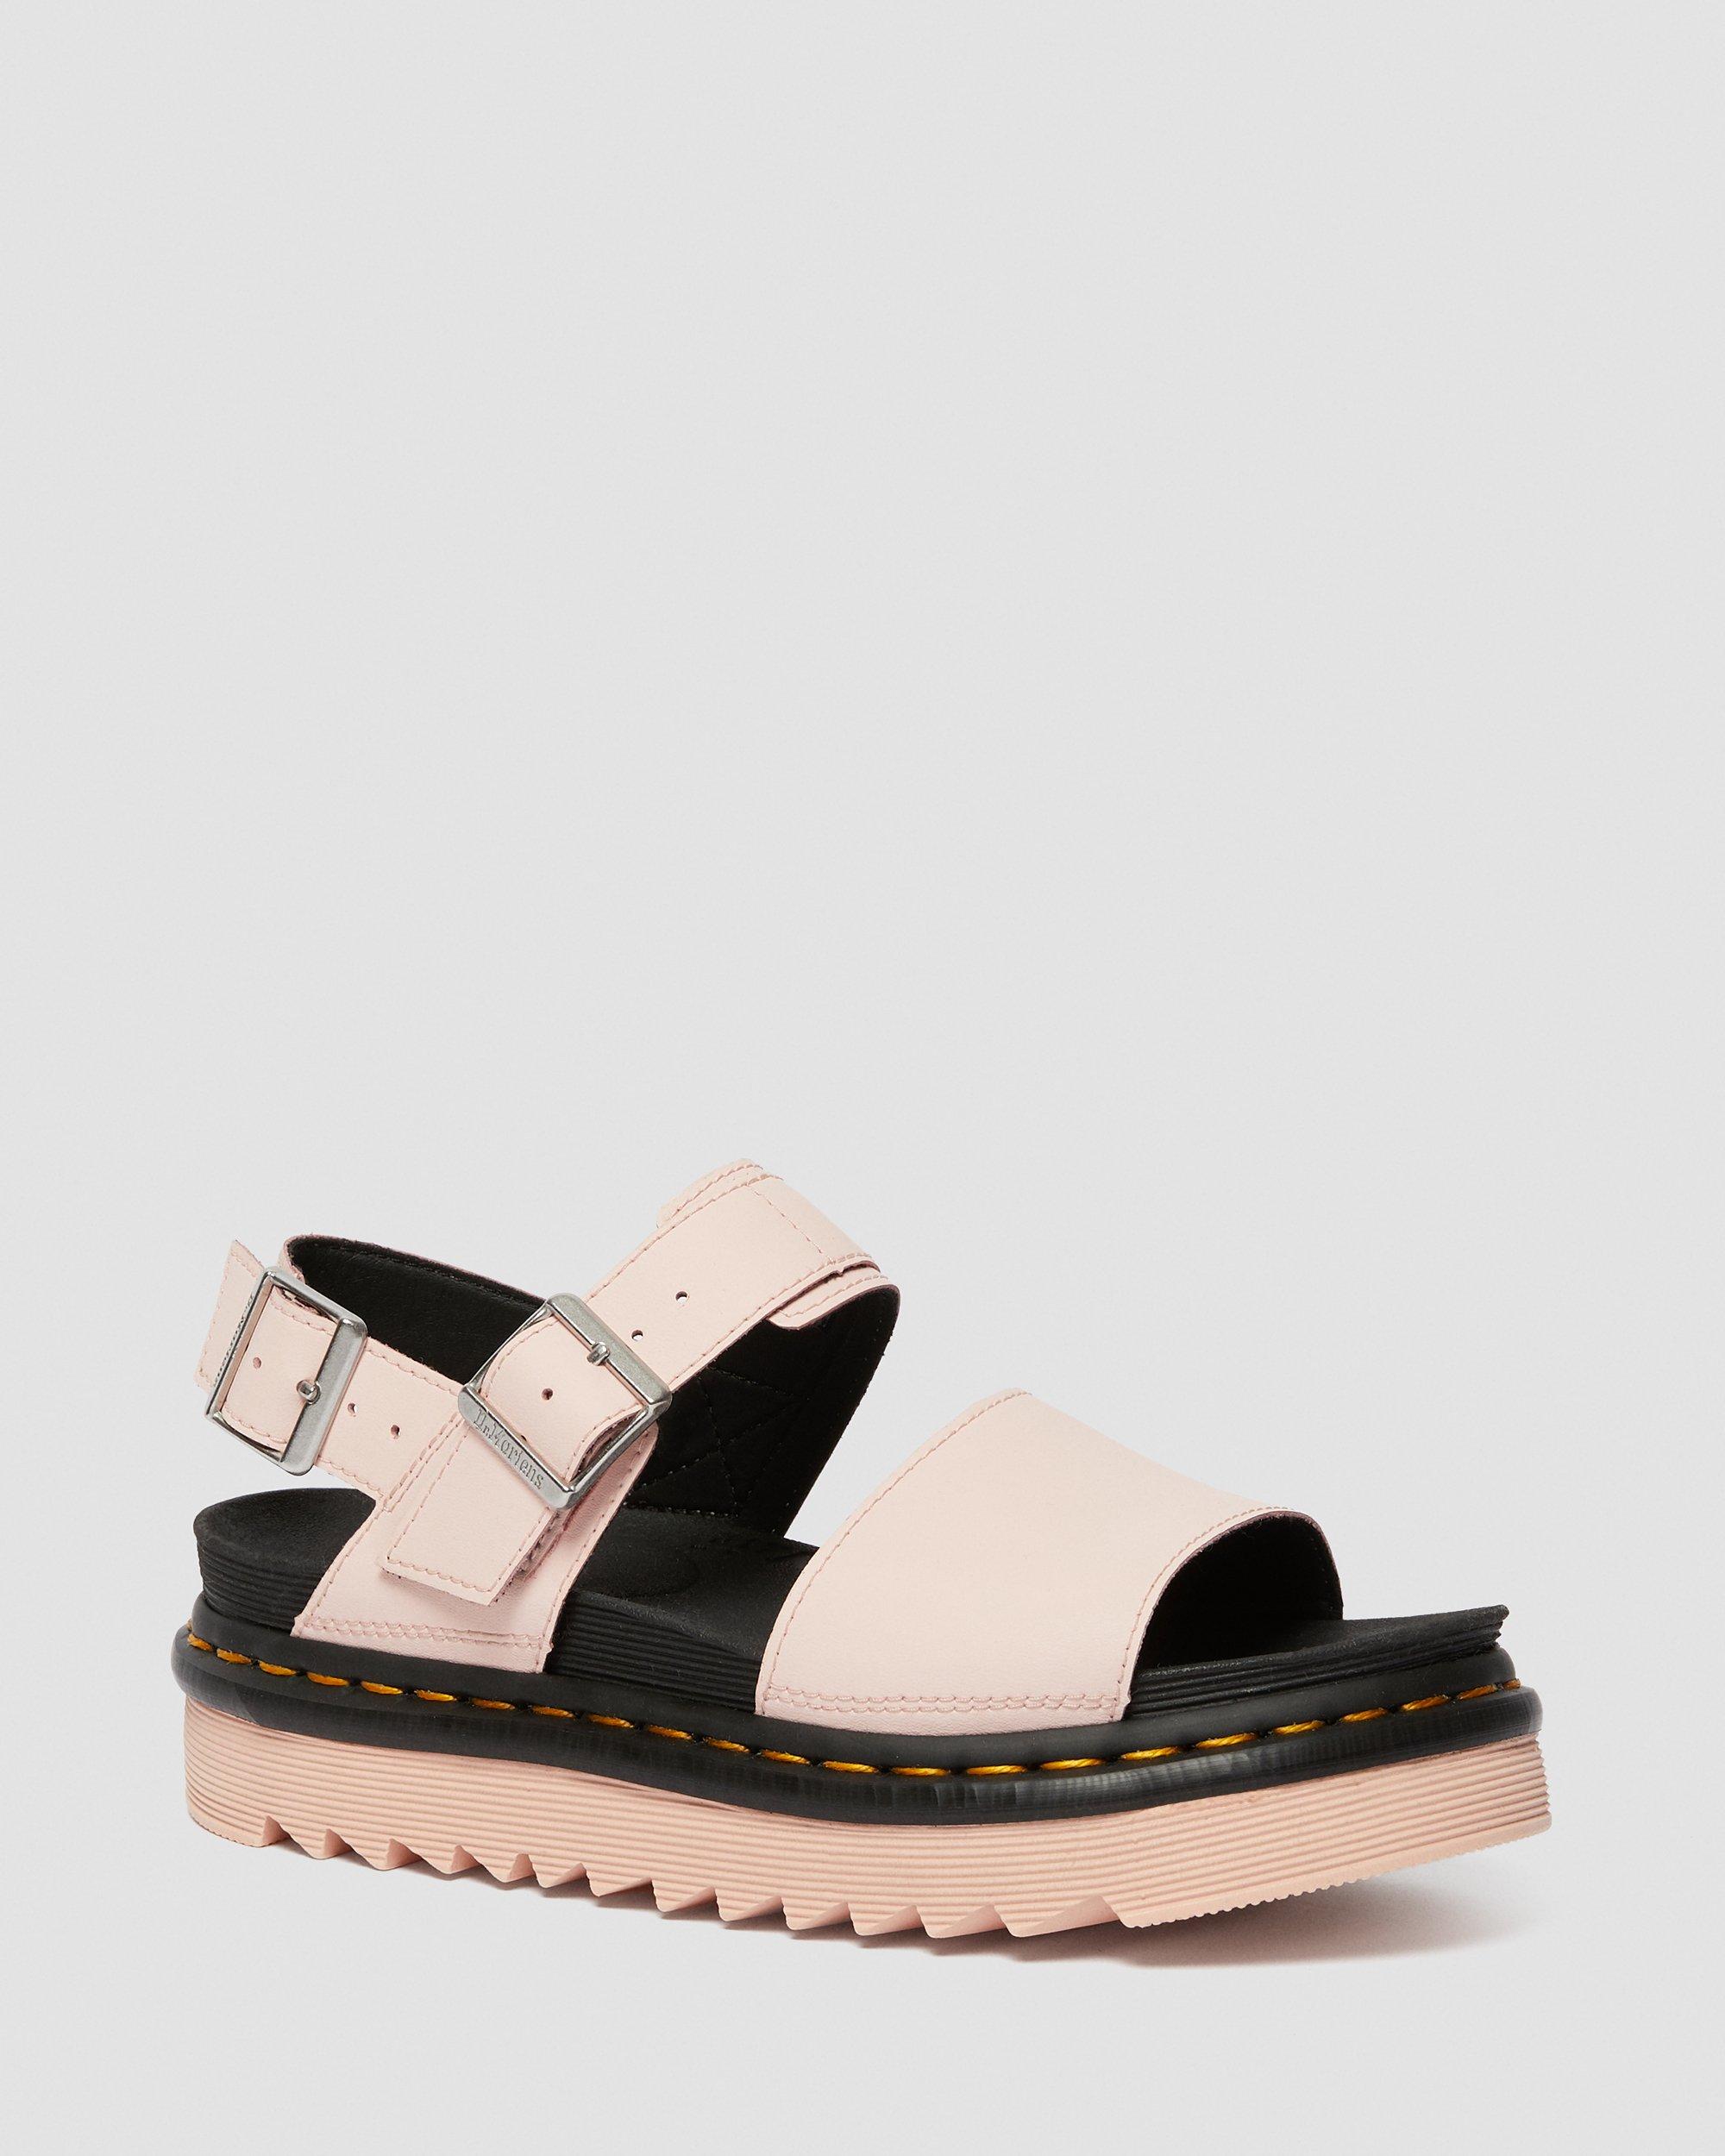 Buy > dr marten sandals pink > in stock